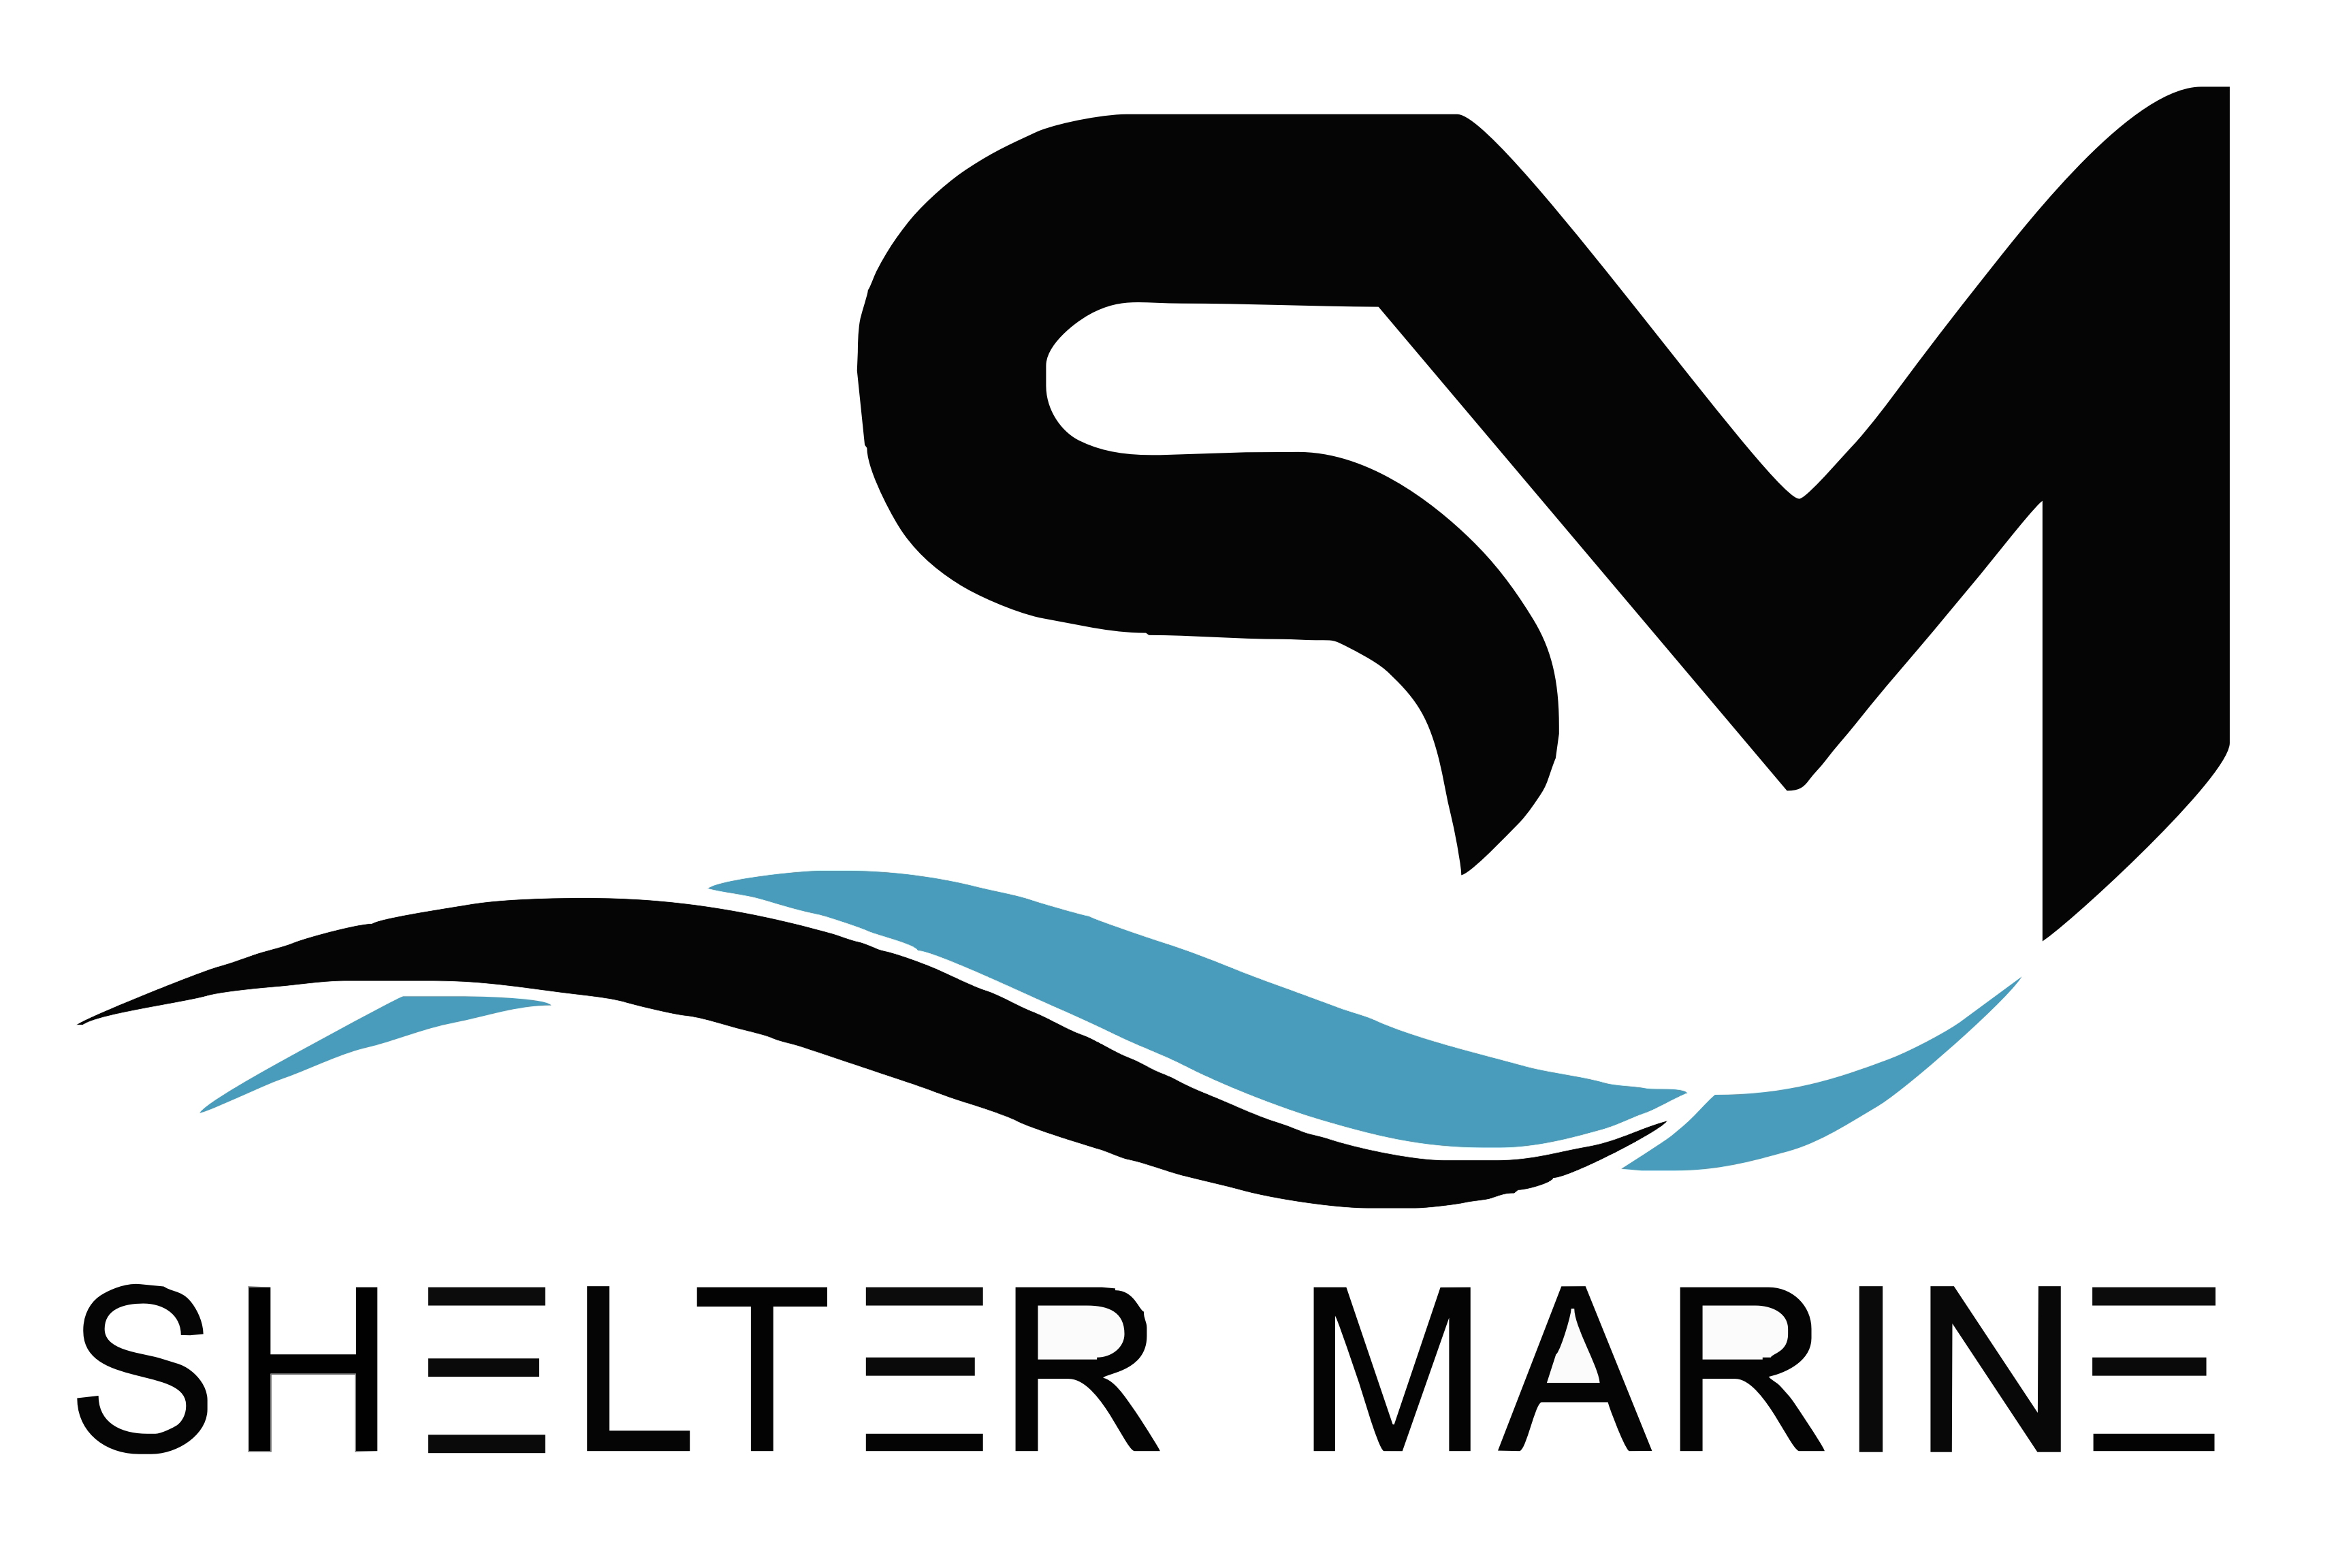 Shelter Marine new logo 4x6